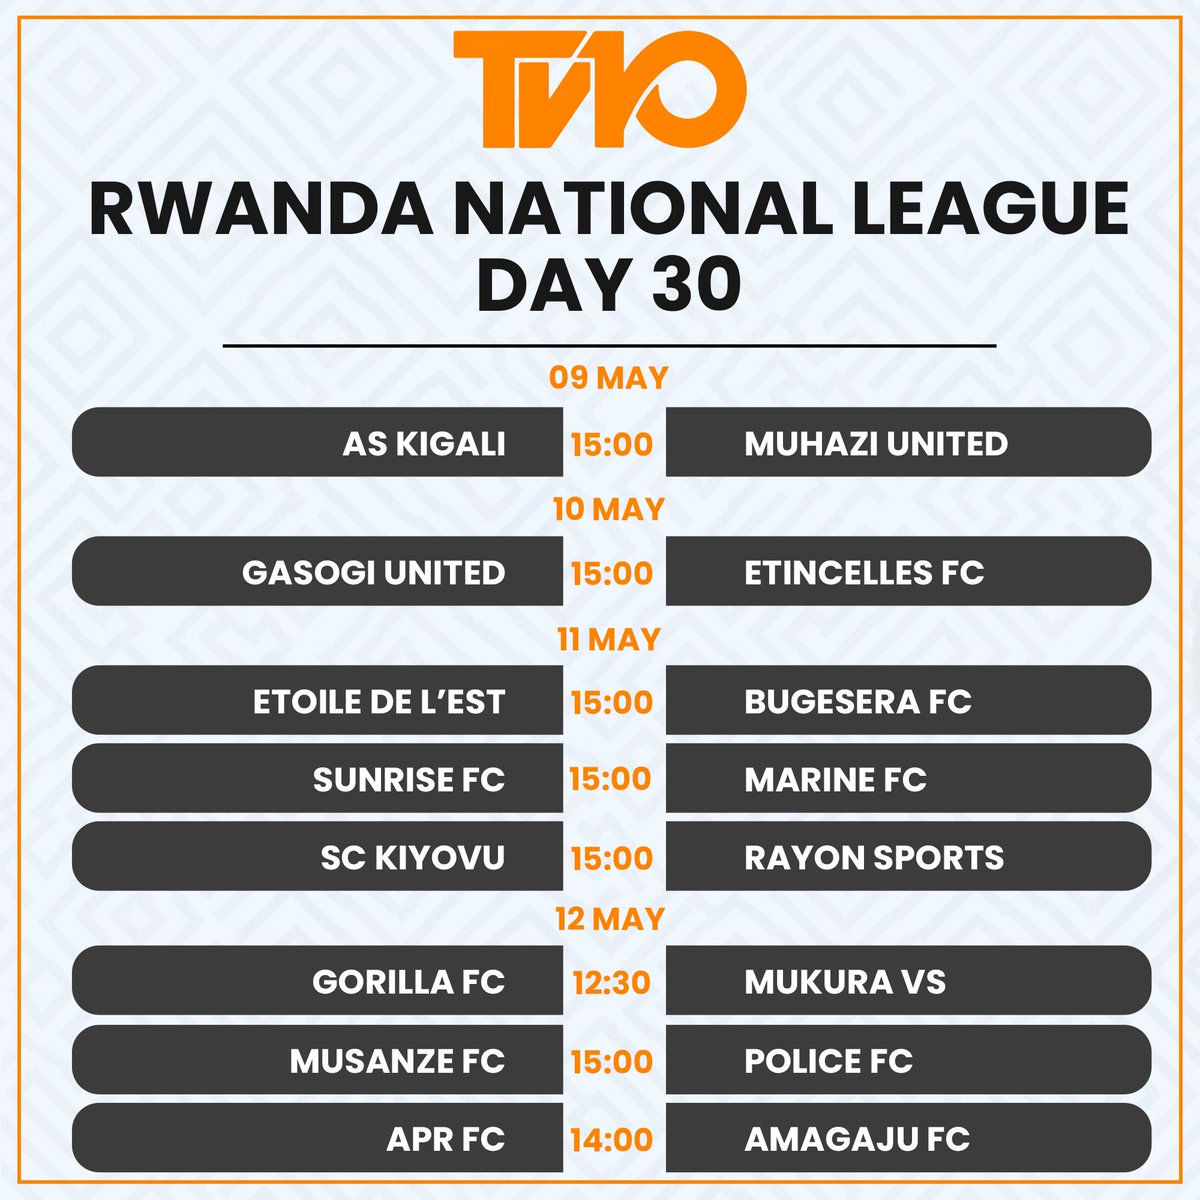 Mu mpera z’iki Cyumweru harakinwa umunsi wanyuma wa Shampiyona y’u Rwanda “Rwanda National League” uko imikino iteganyijwe.